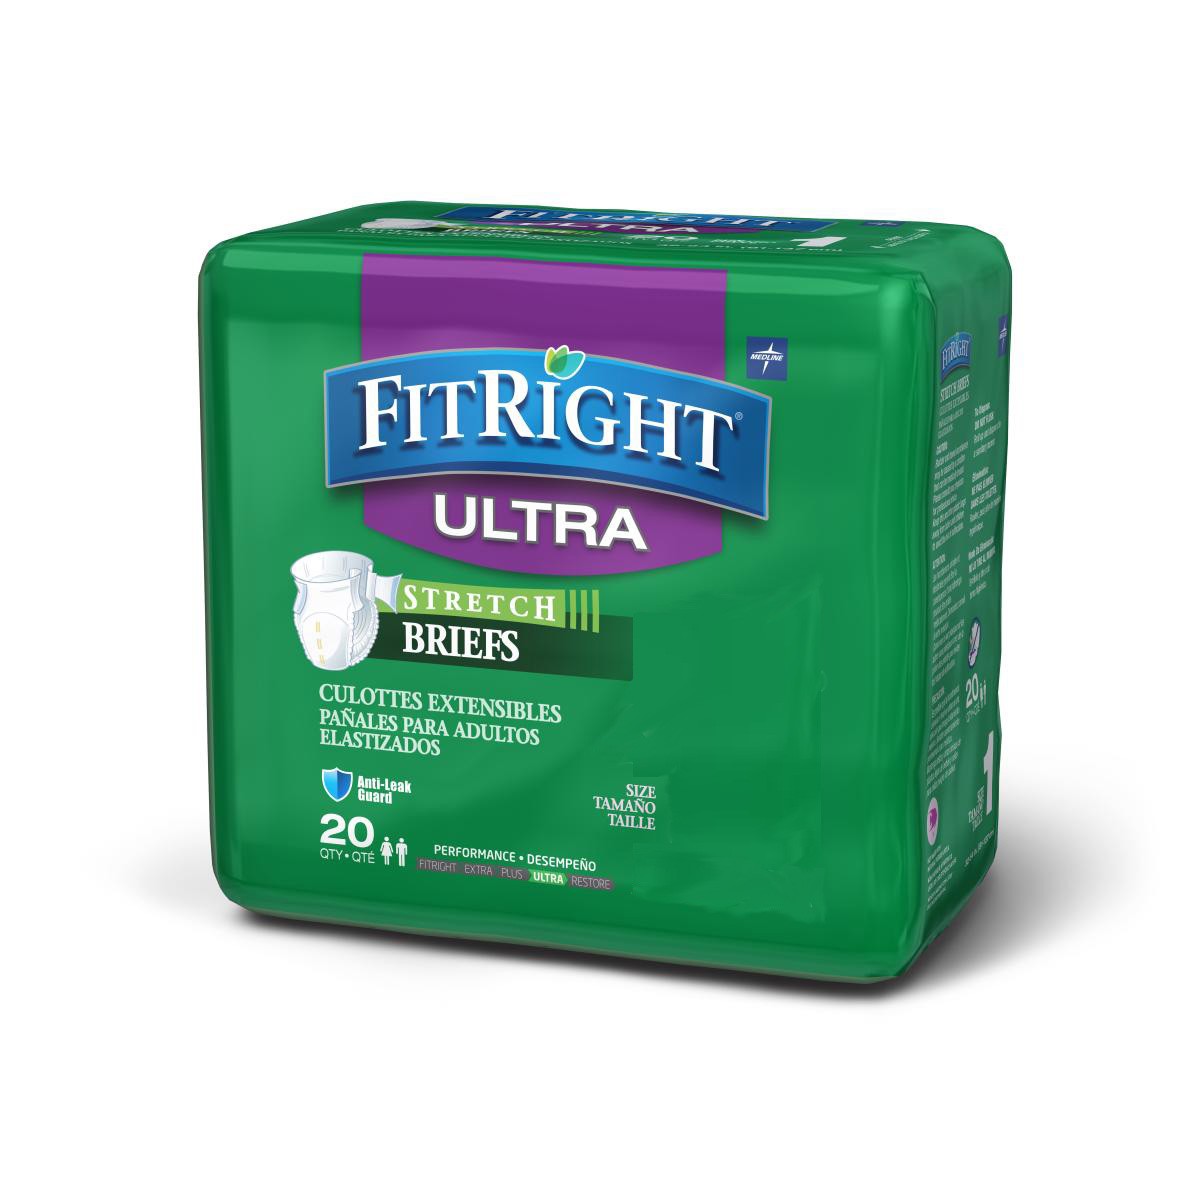 Medline FitRight Stretch Ultra Briefs - 20 Pack | Go Home Medical.com